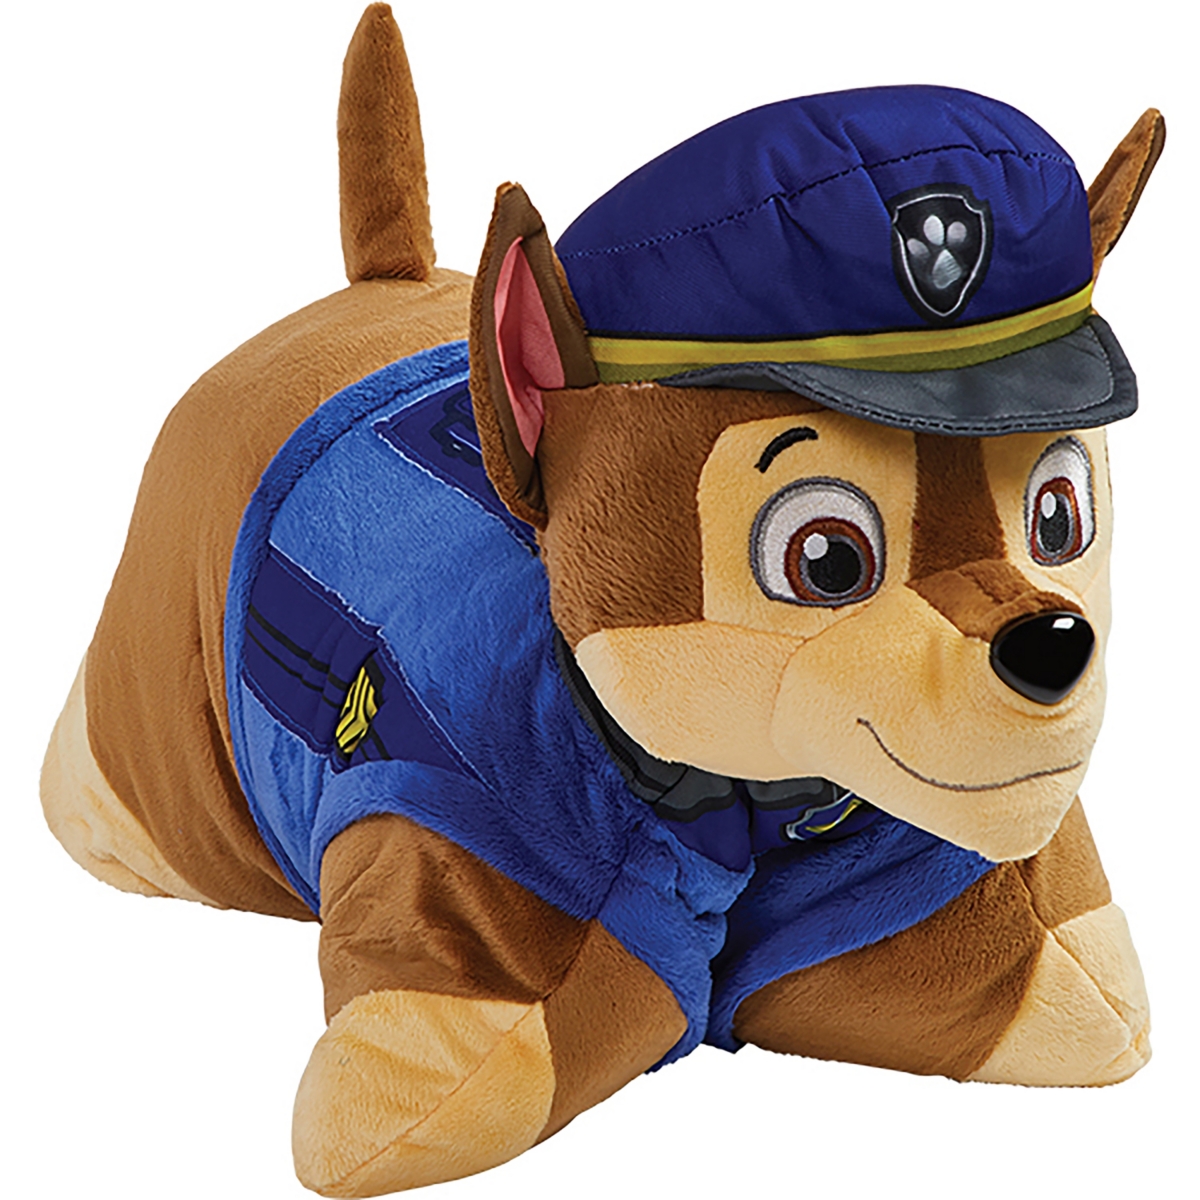 Pillow Pets Kids' Nickelodeon Paw Patrol Chase Stuffed Animal Plush Toy In Medium Bro